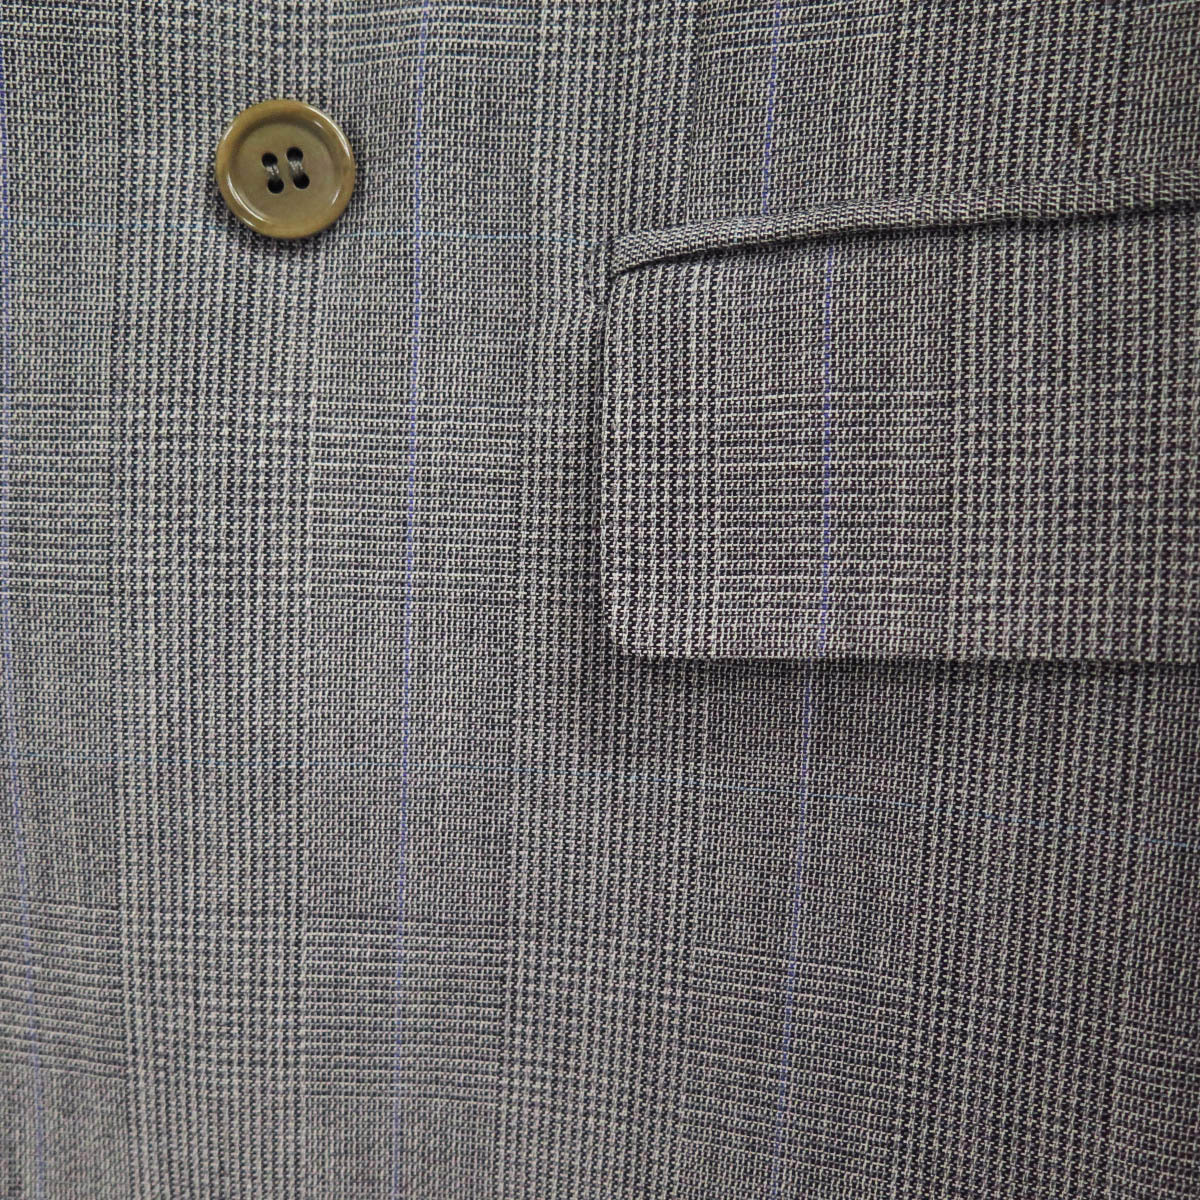 Brioni Wool Glen Plaid Double Breasted Suit 2piece ブリオーニ ウール グレンチェック ダブルブレスト スーツ セットアップ_柄が一致した非常に丁寧な仕立てです。